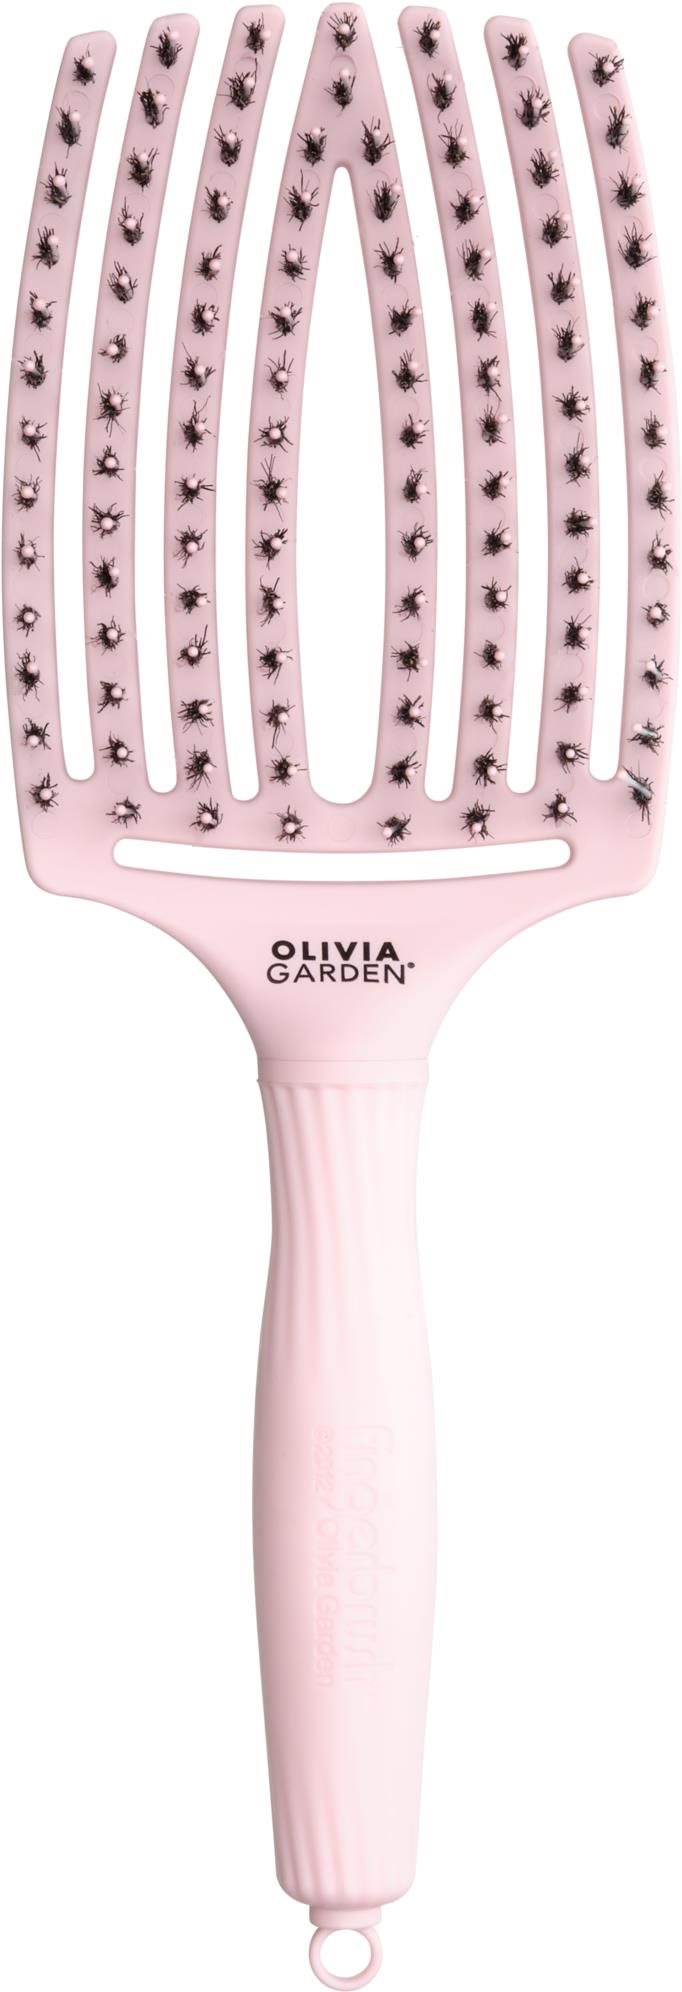 OLIVIA GARDEN Fingerbrush Pastel Pink Large